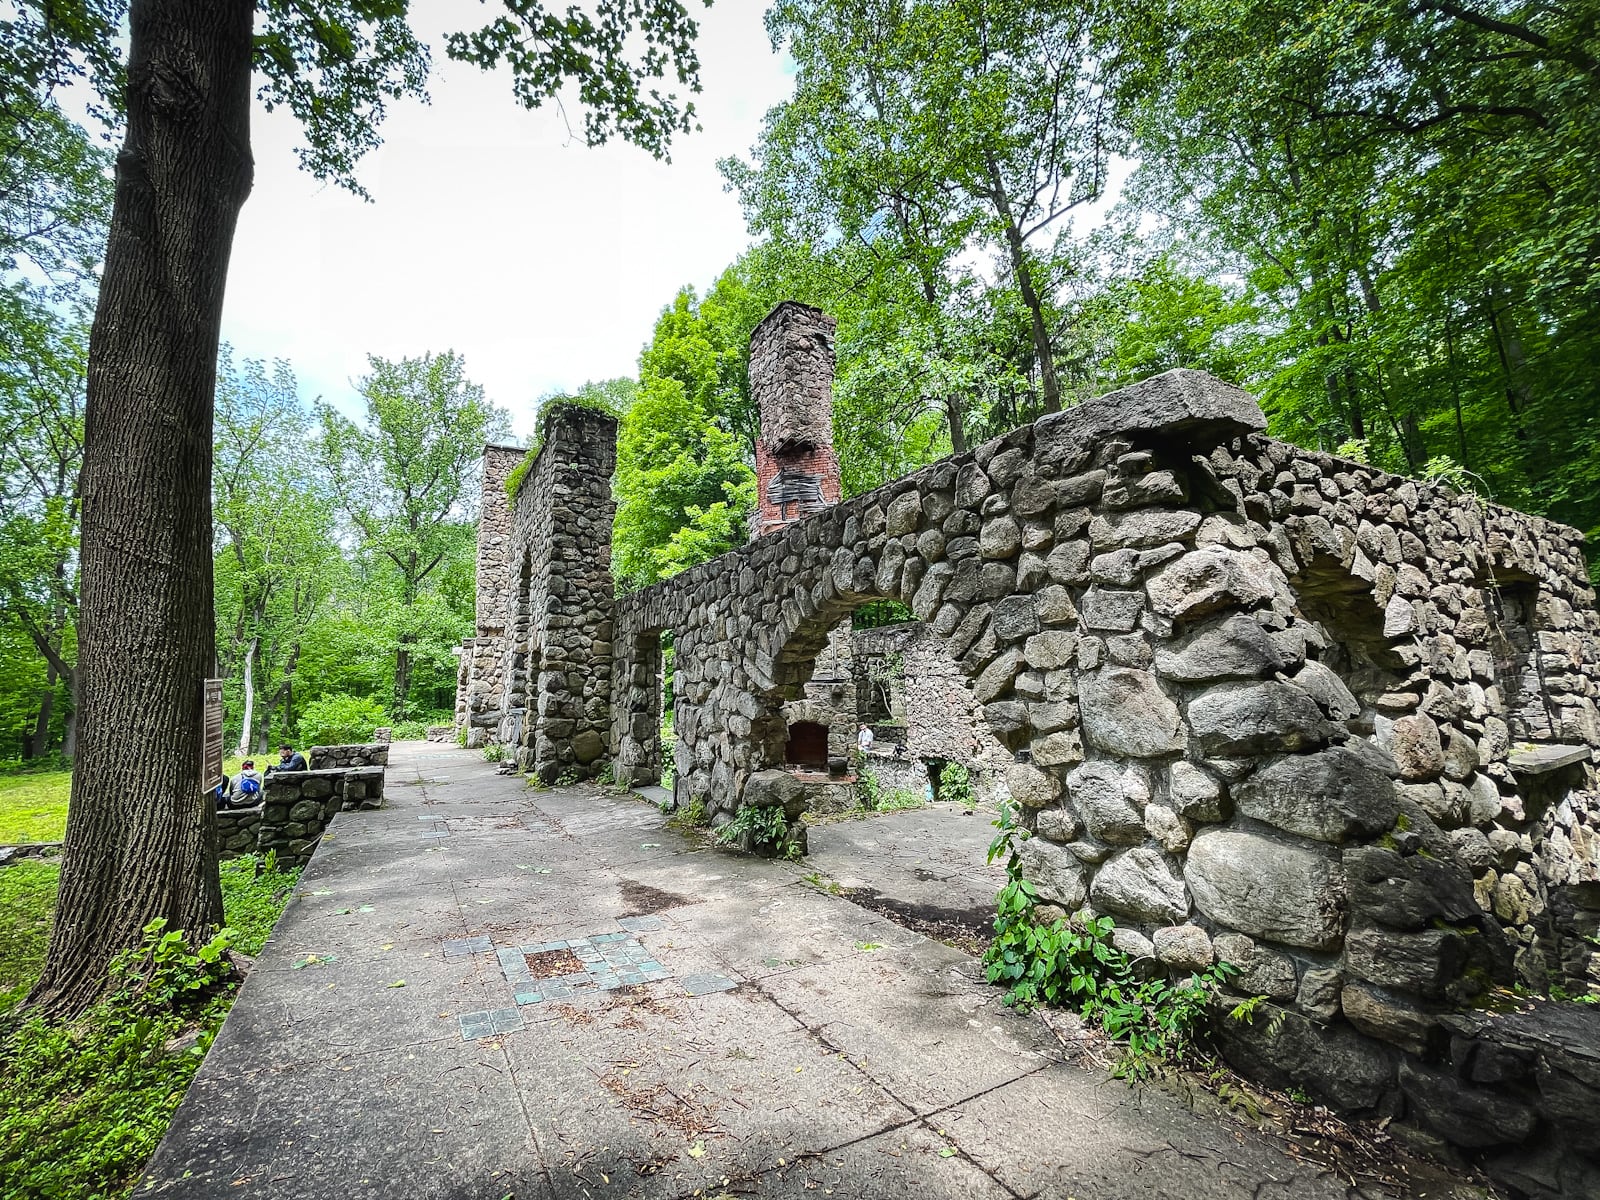 Cornish Estate Ruins, Cold Spring, NY